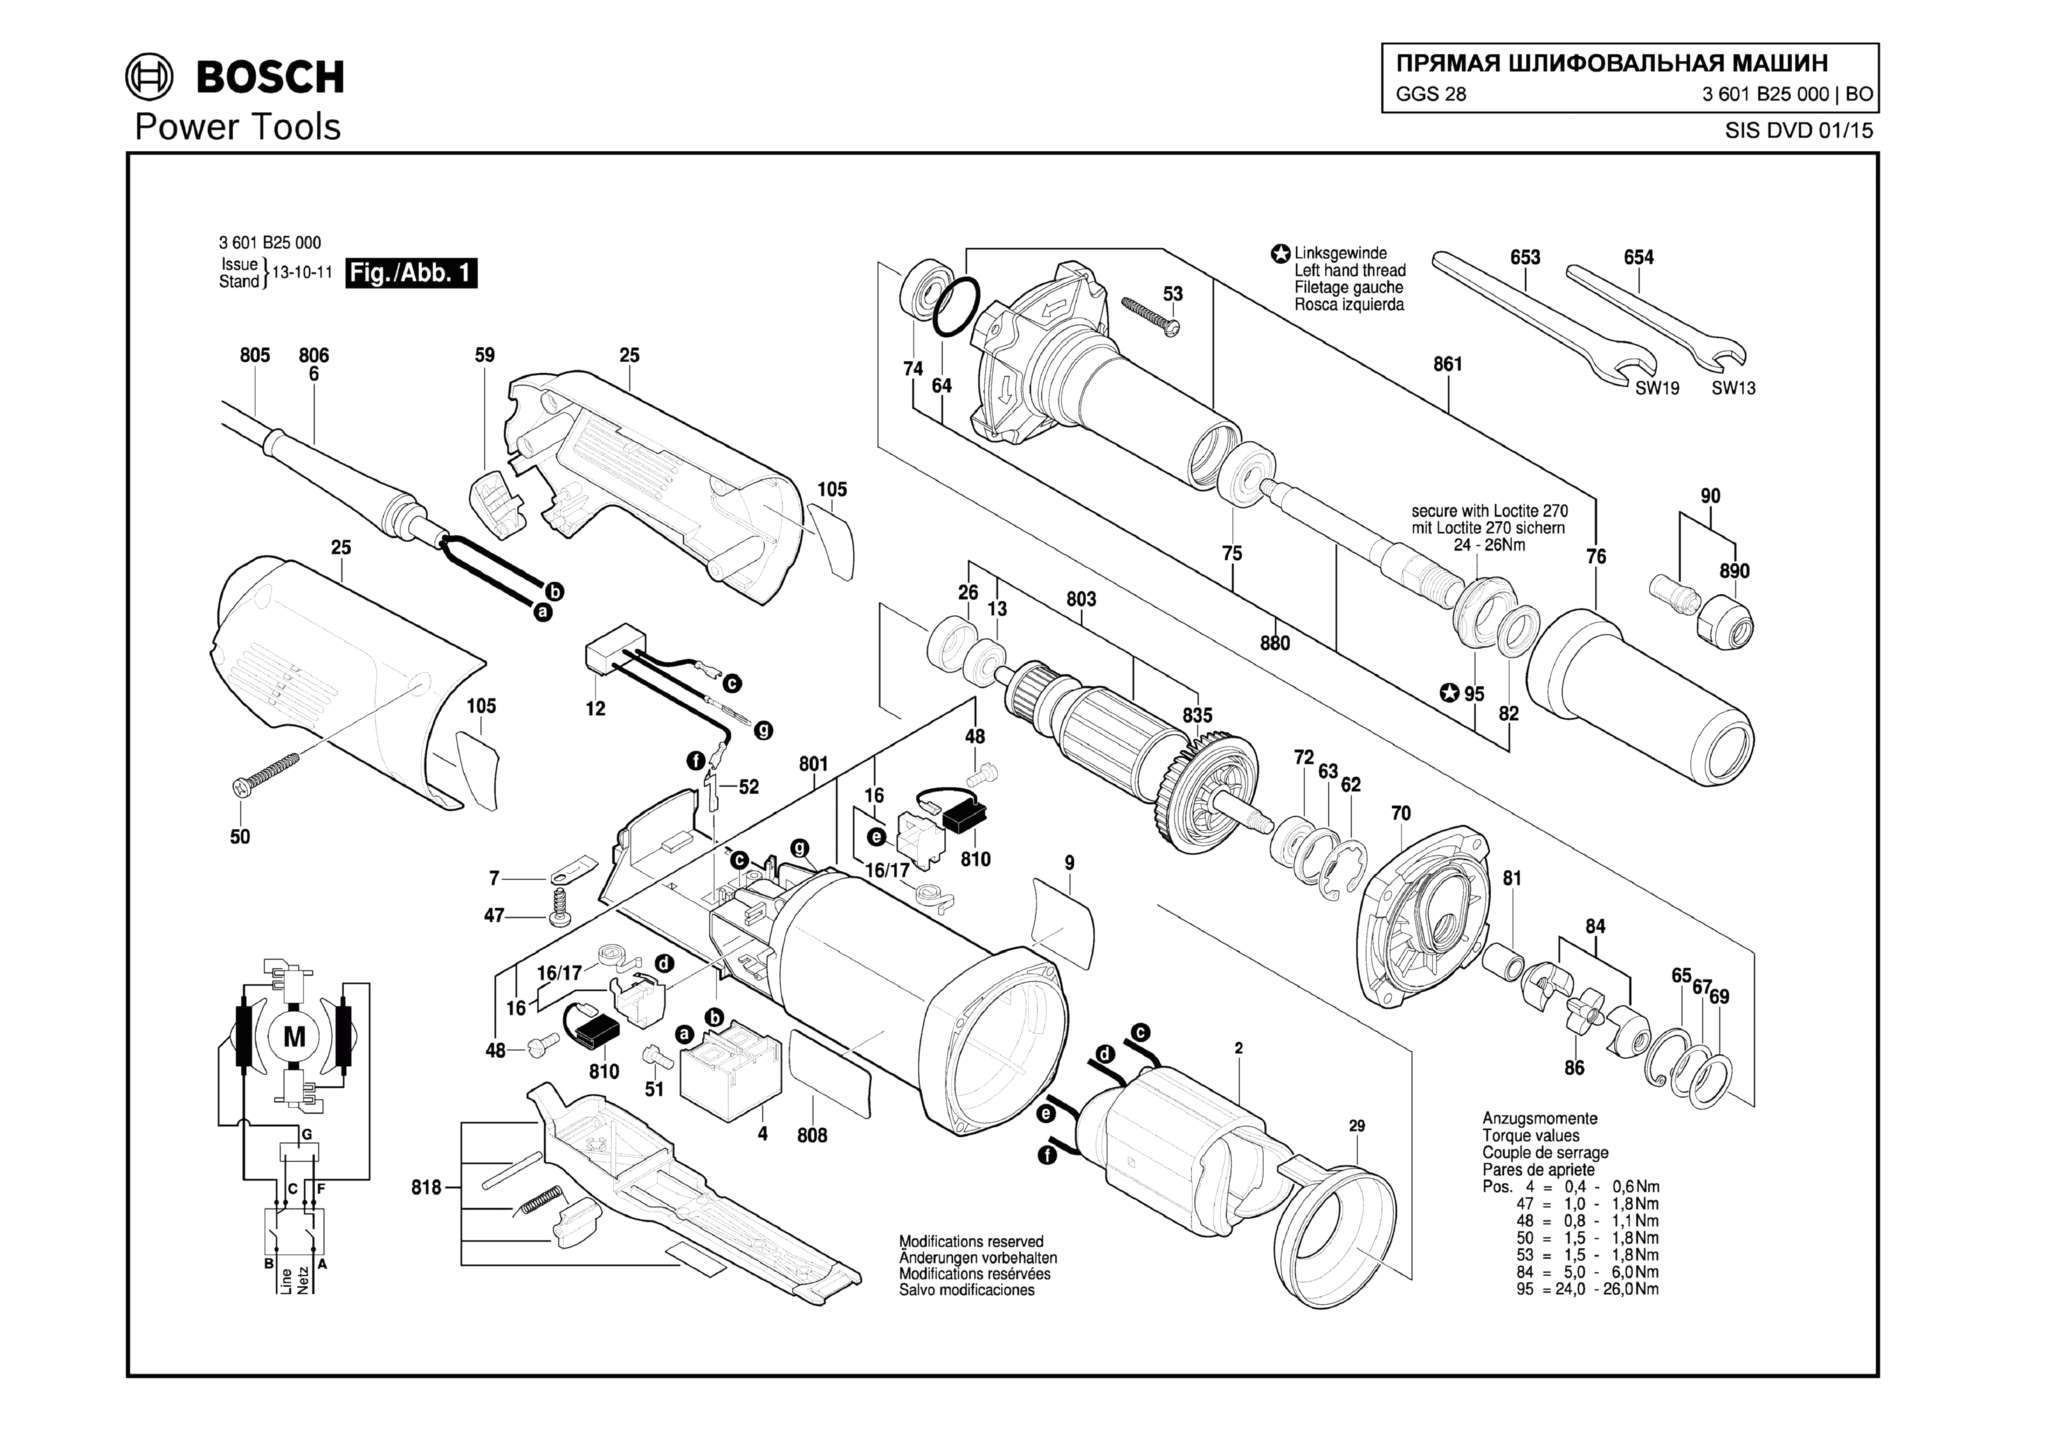 Запчасти, схема и деталировка Bosch GGS 28 (ТИП 3601B25000)